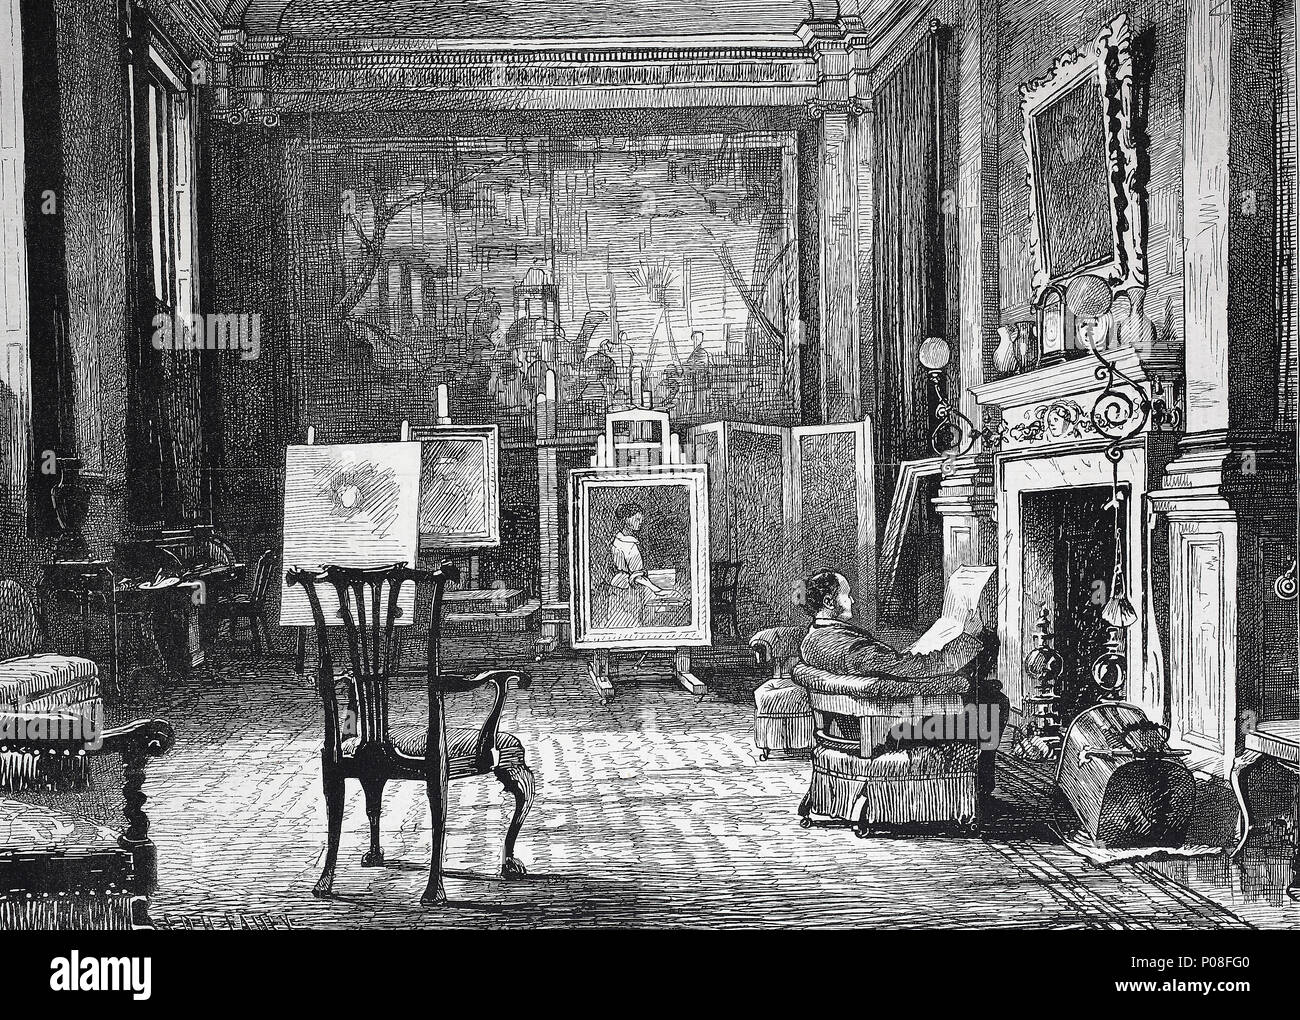 Un atelier d'artiste, M. J.E. Millais à la maison. Sir John Everett Millais, 1 baronnet, 1829 - 1896, était un peintre et illustrateur Anglais qui fut l'un des fondateurs de la Fraternité préraphaélite, numérique l'amélioration de la reproduction de l'original d'imprimer à partir de l'année 1881 Banque D'Images